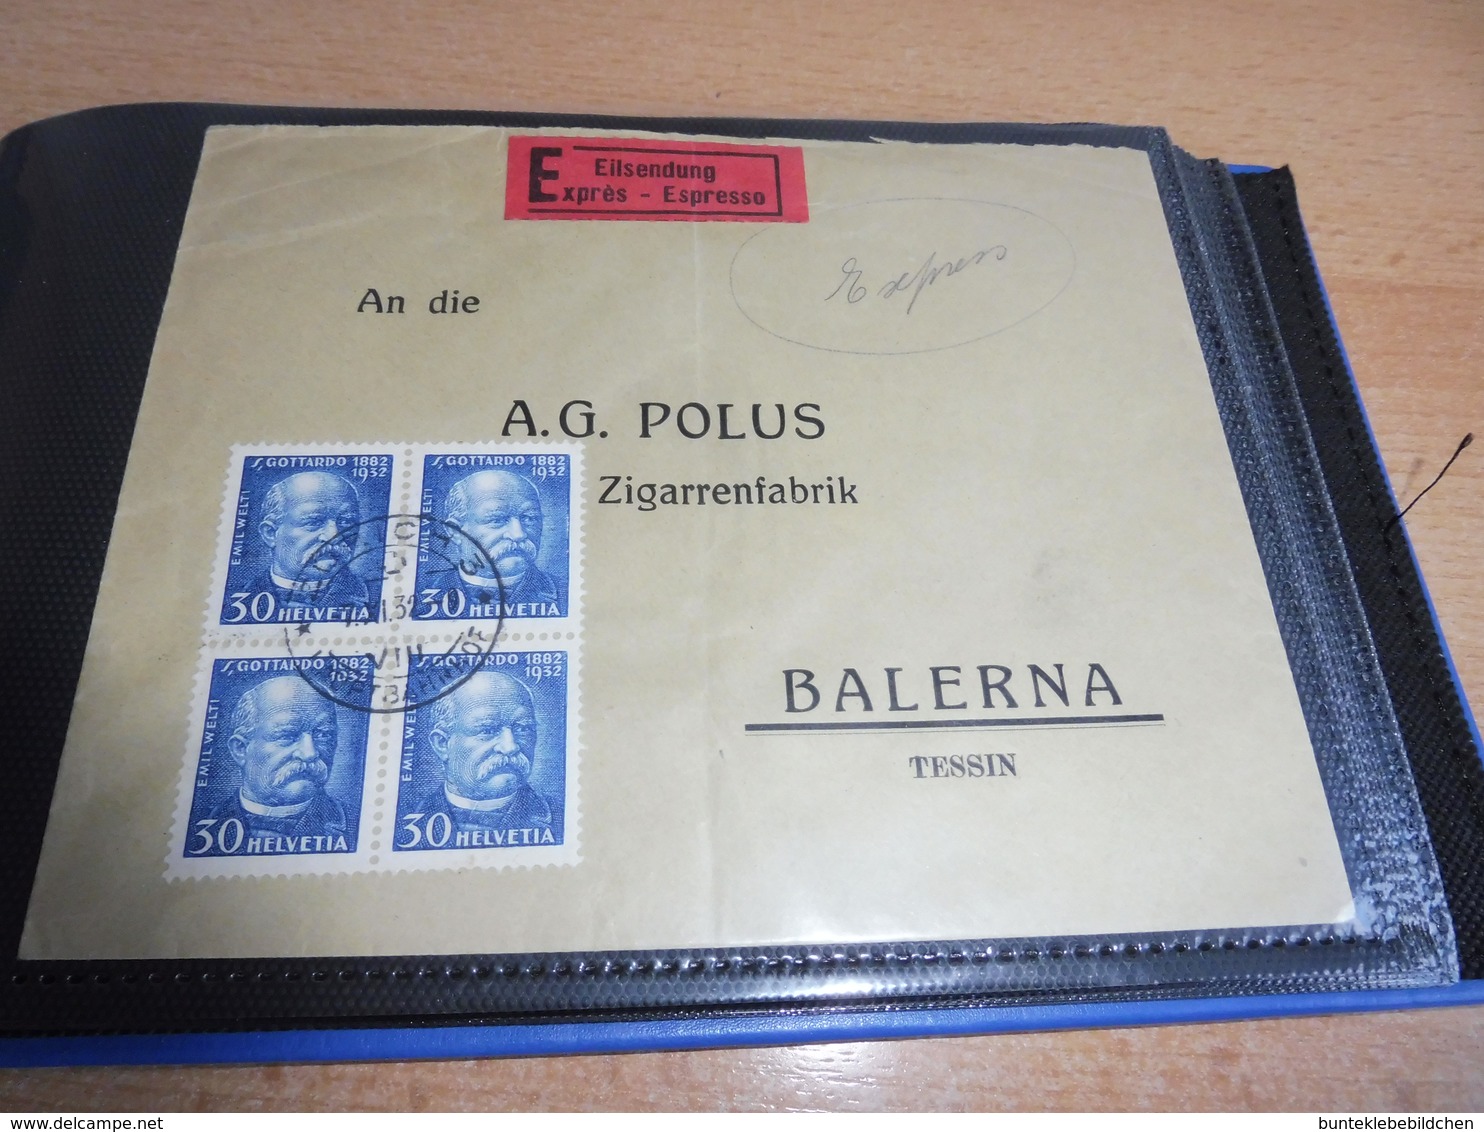 Schweiz Briefeposten mit z.B. nach Venezuela ......  Alles Abgebildet